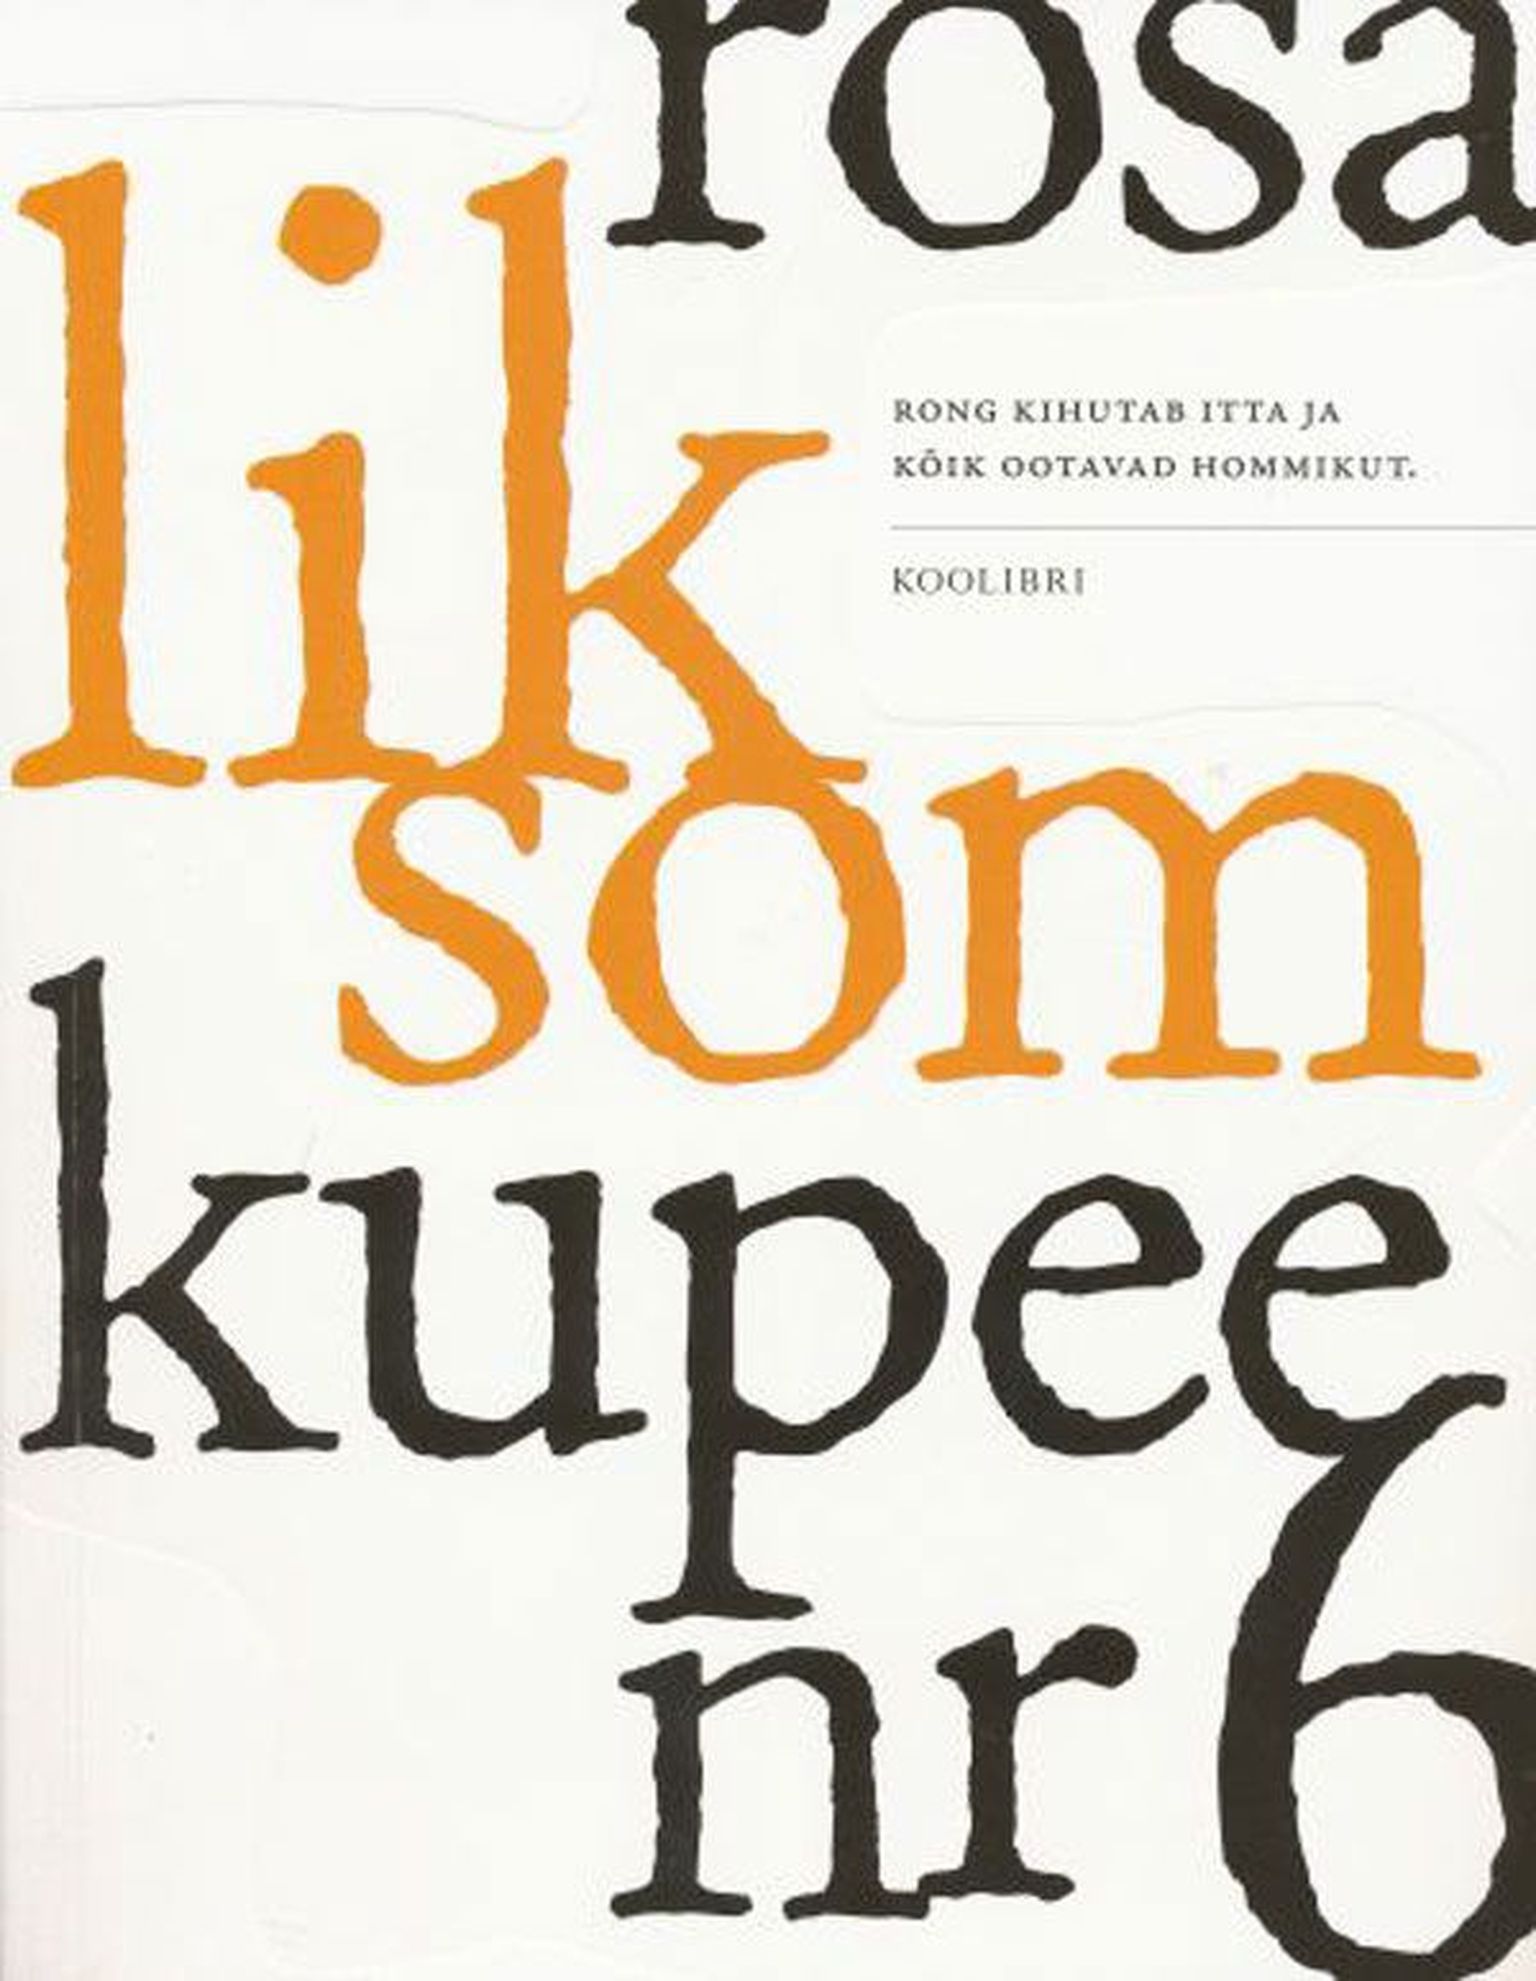 Raamat
Rosa Liksom
«Kupee number 6»  
tõlkija: Kadri Jaanits
Koolibri, 2013,
74 lk